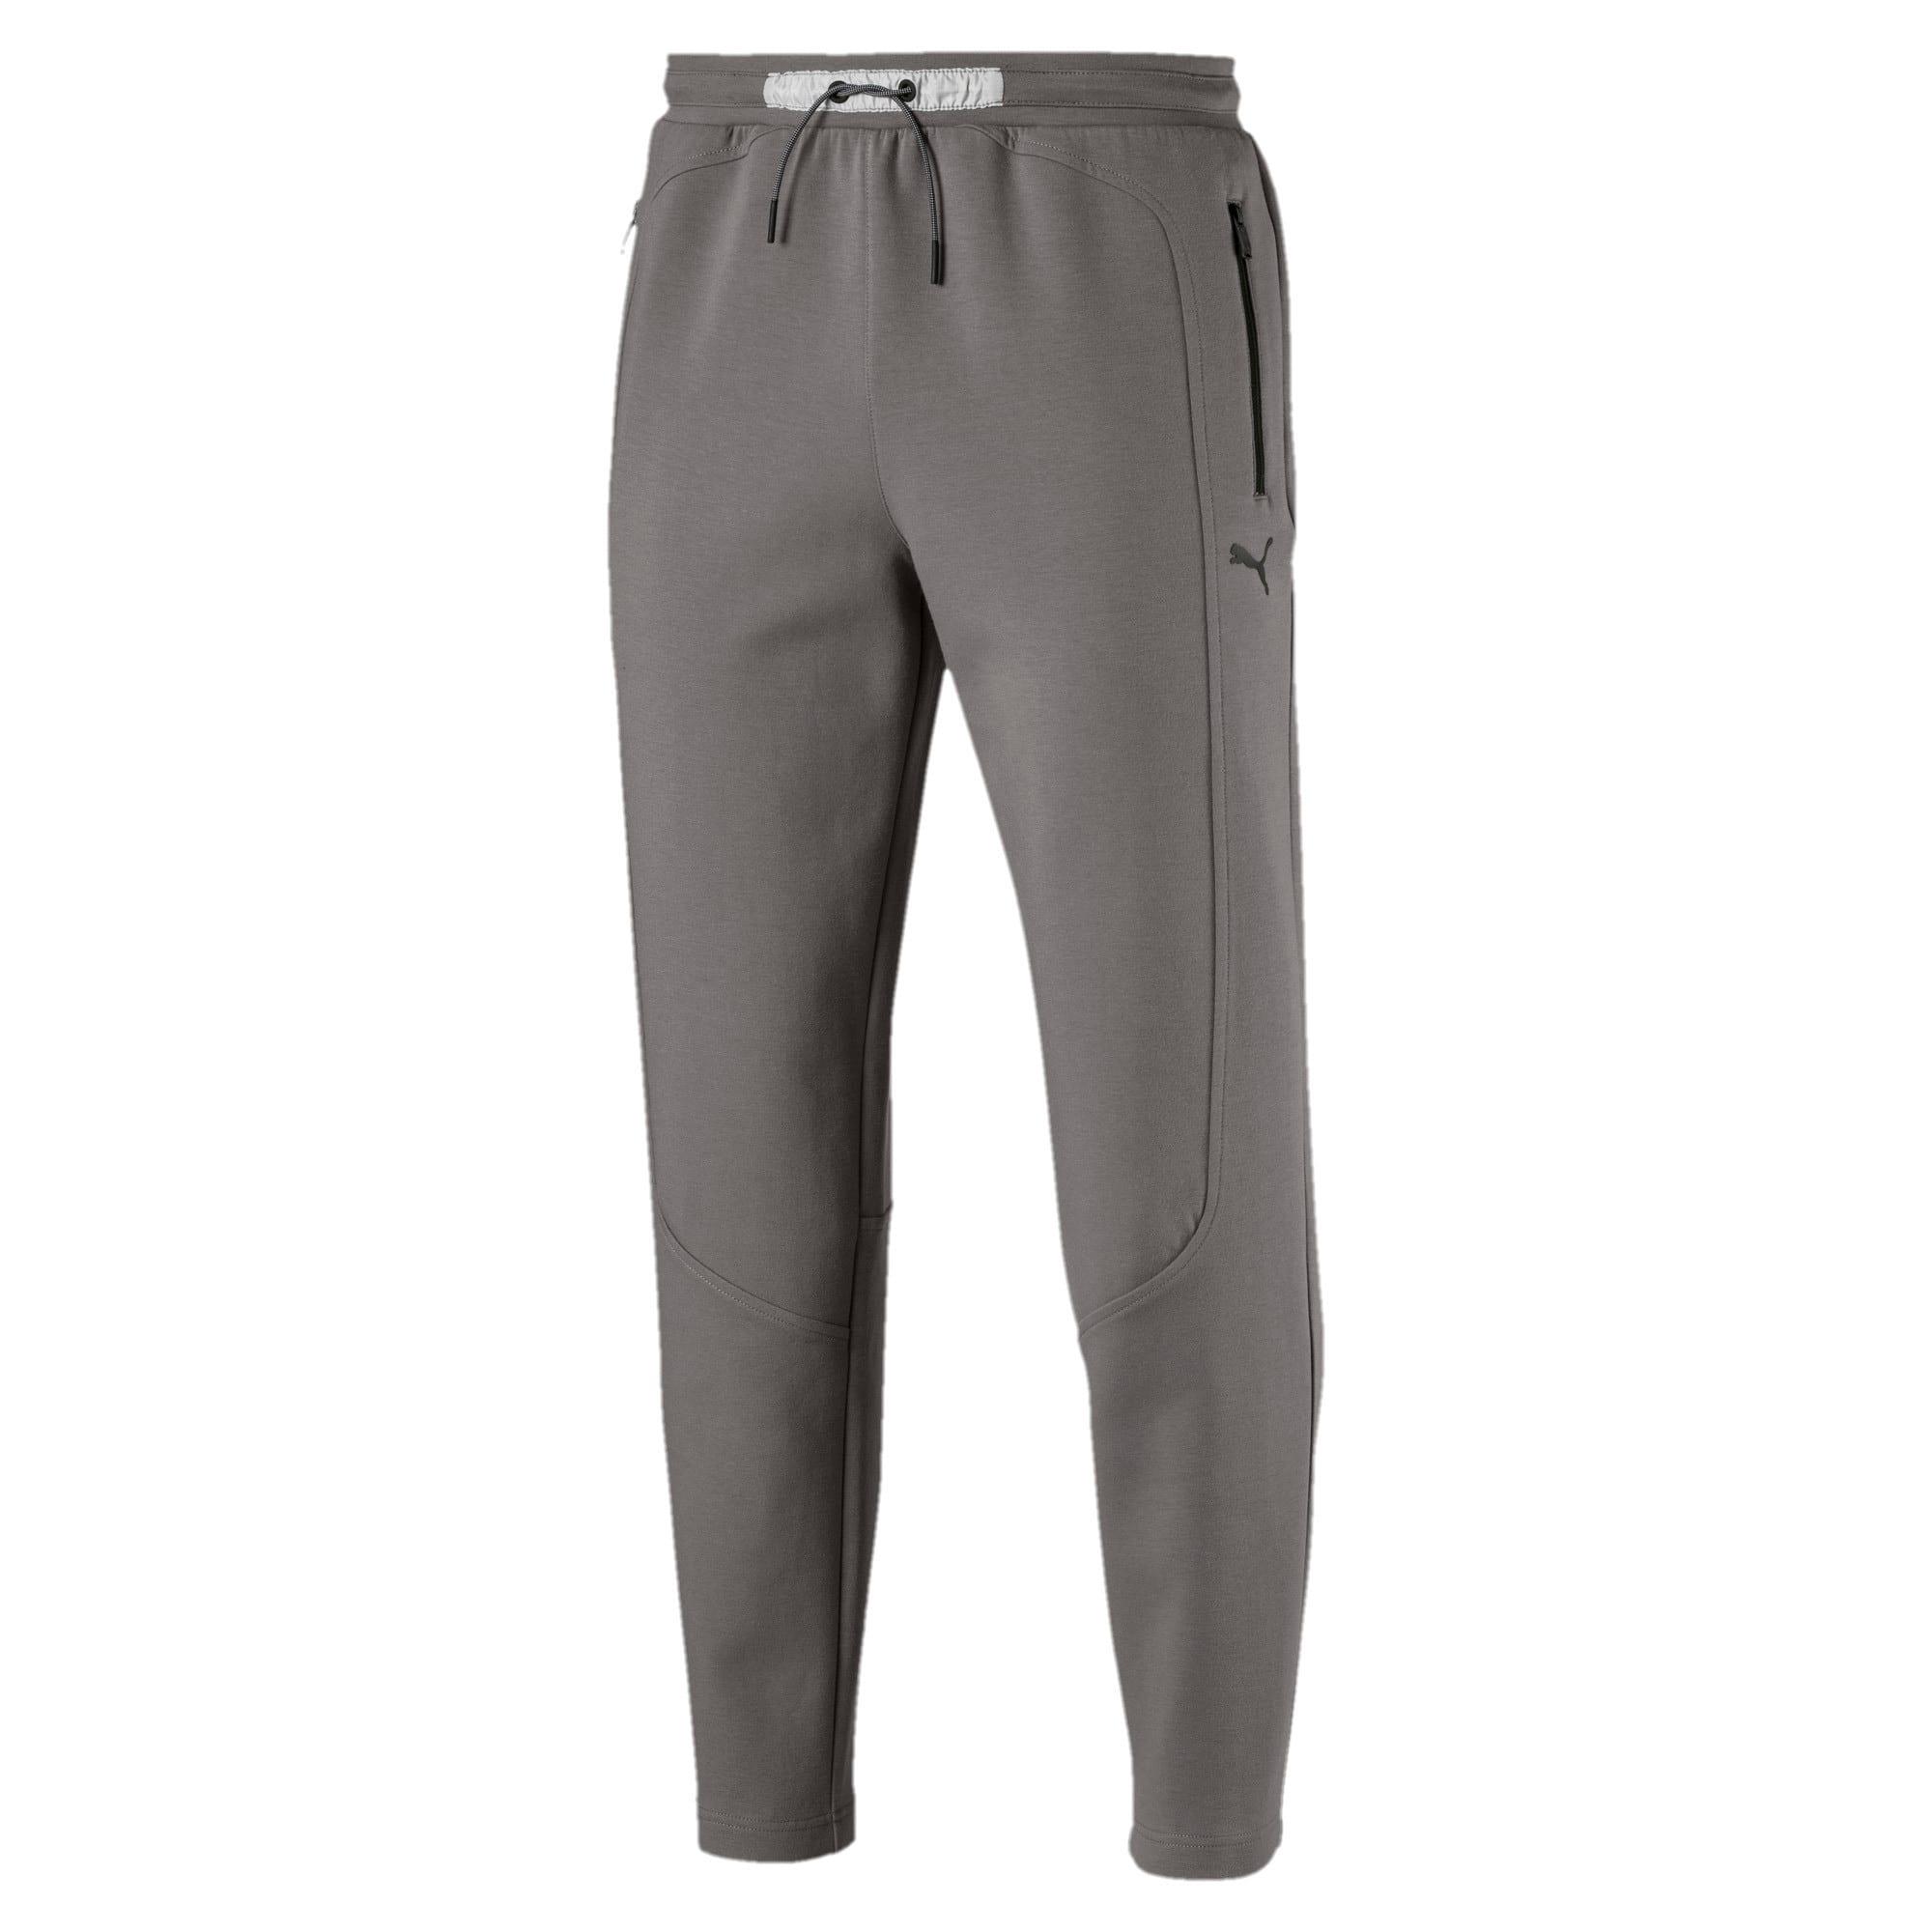 PUMA Cotton Scuderia Ferrari Men's Oc Sweatpants in Charcoal Gray (Gray ...